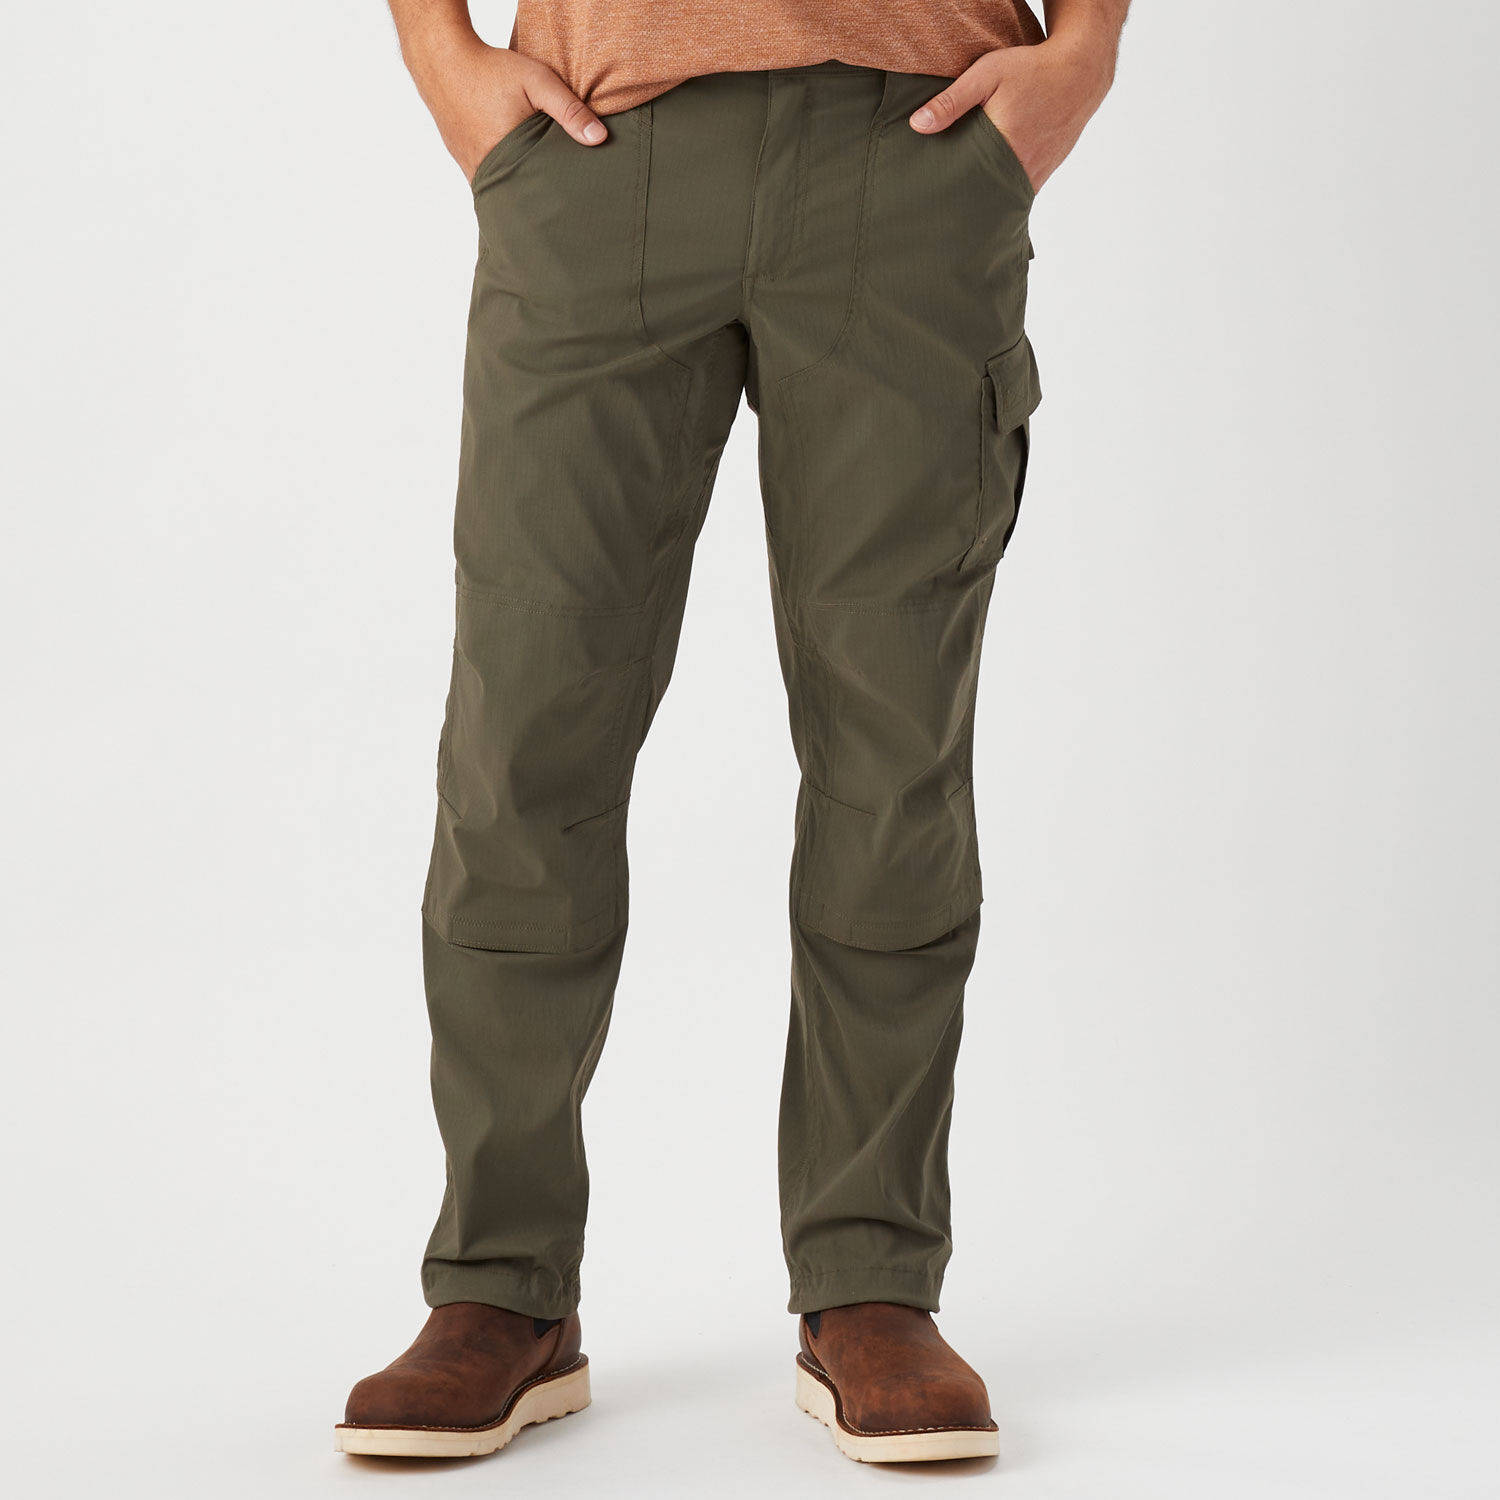 Pocket Cargo Trousers for Man  GARDEN S217017M  DEELUXESHOP